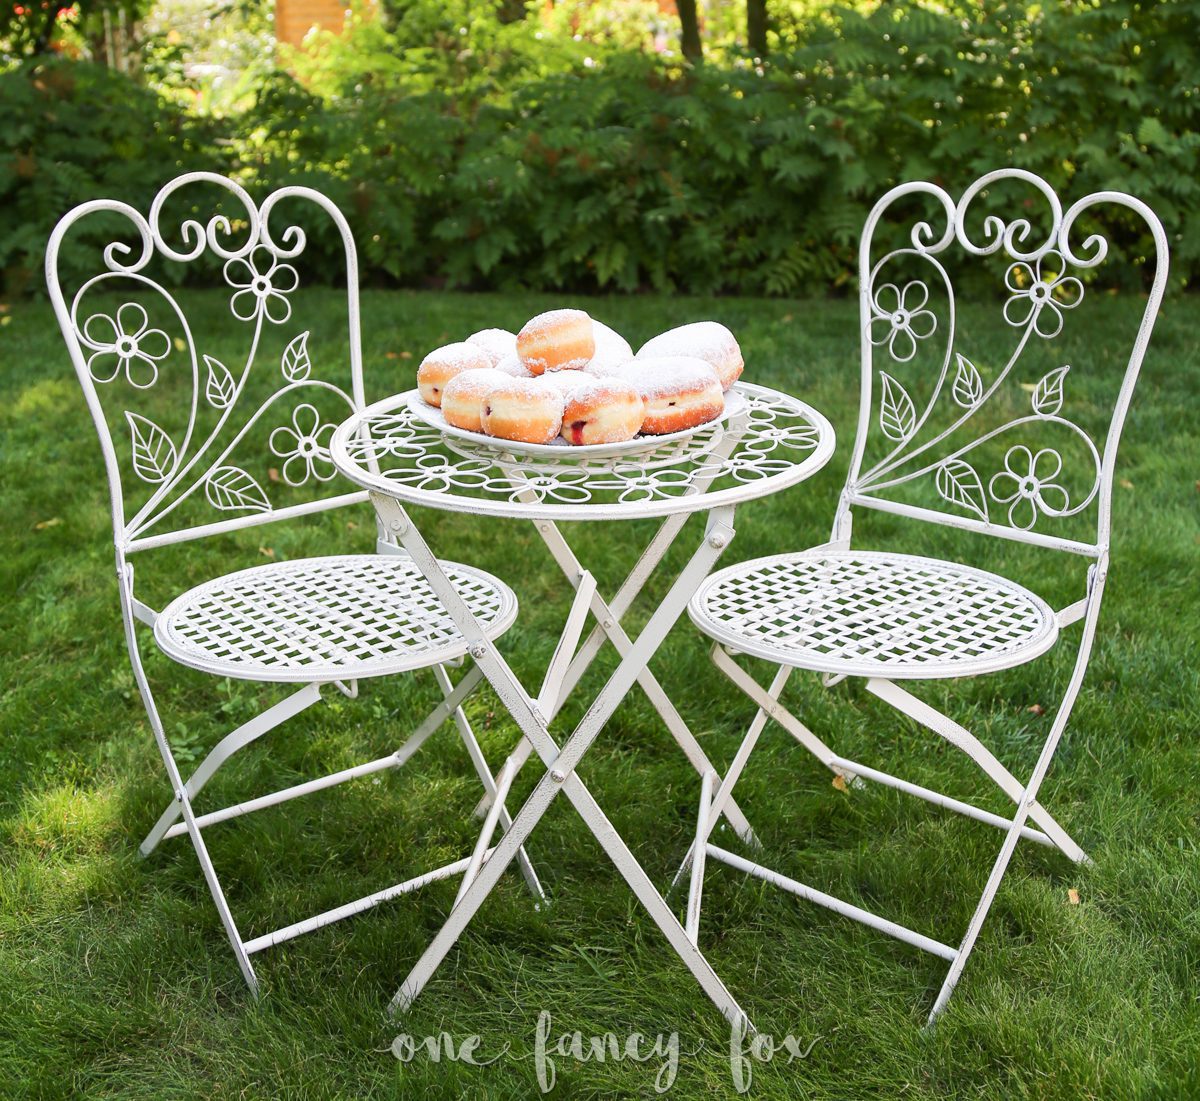 Vintage Tisch und 2 Stühle für Kinder mieten bei One Fancy Fox, Verleih für Hochzeitsdekoration und Kleinmobiliar